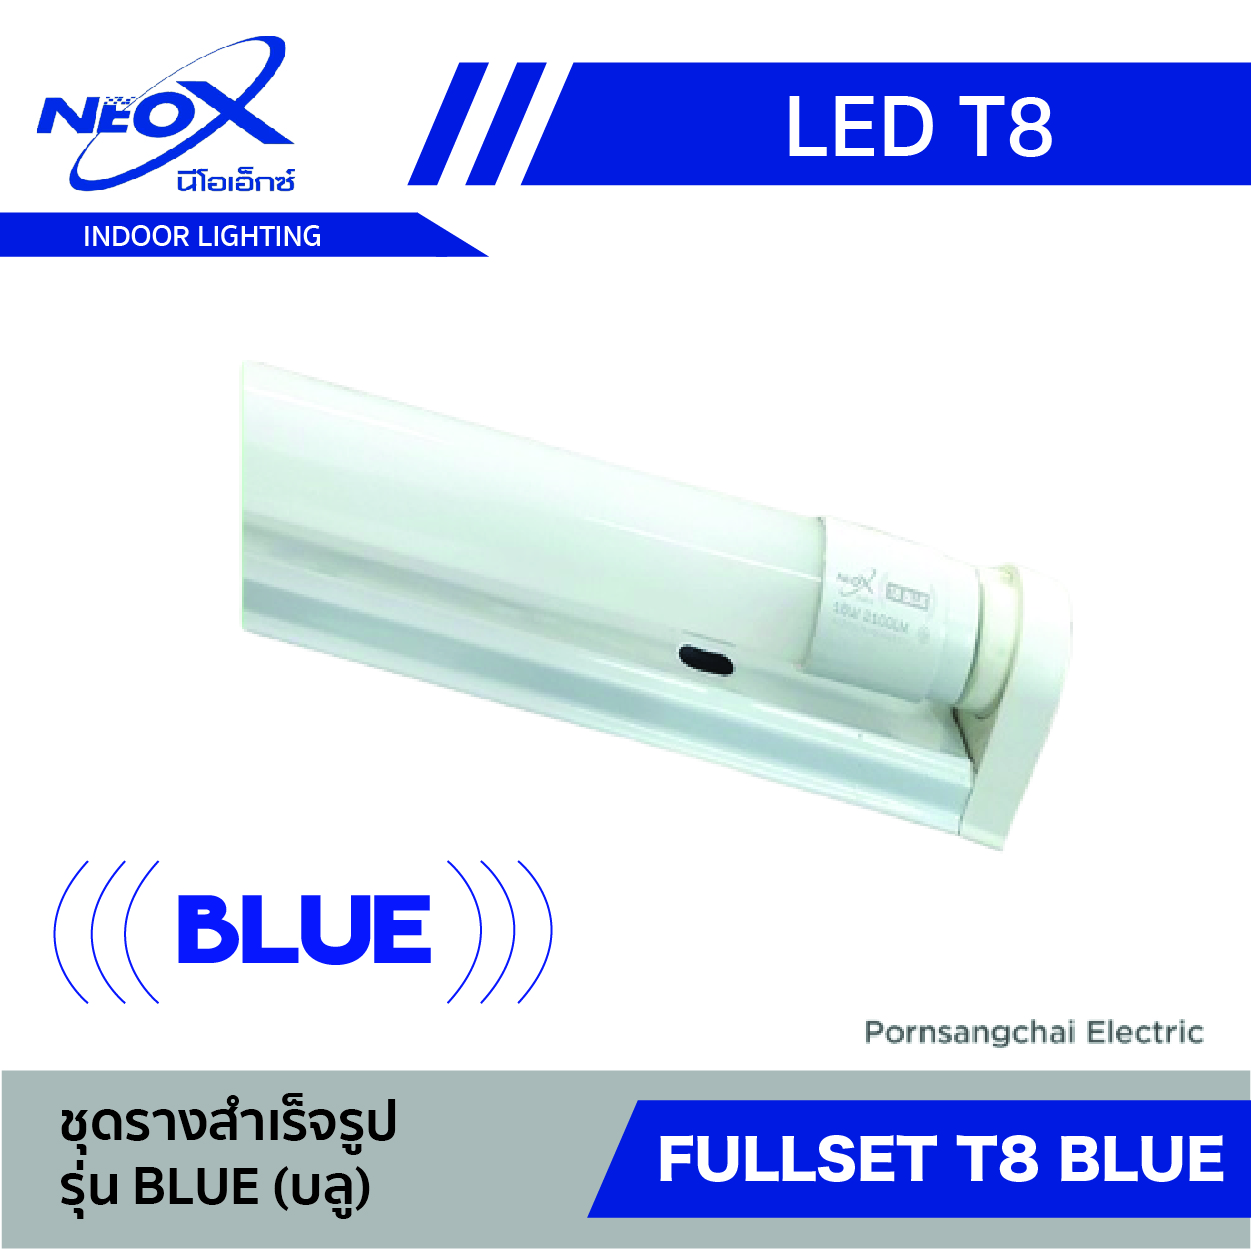 ชุดเซ็ต LED T8 NEOX รุ่น Blue